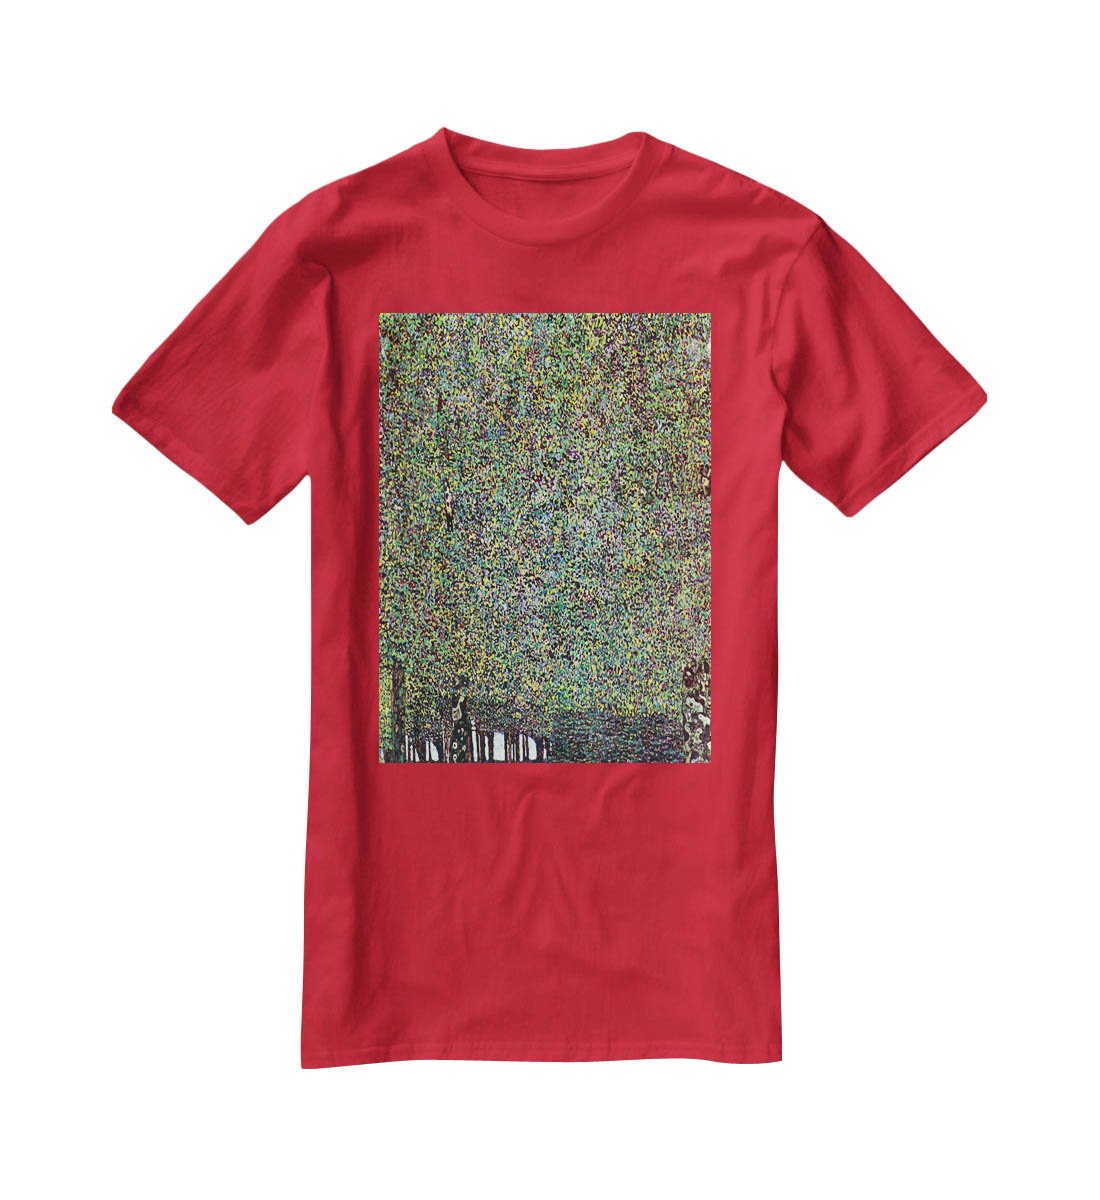 The Park by Klimt T-Shirt - Canvas Art Rocks - 4